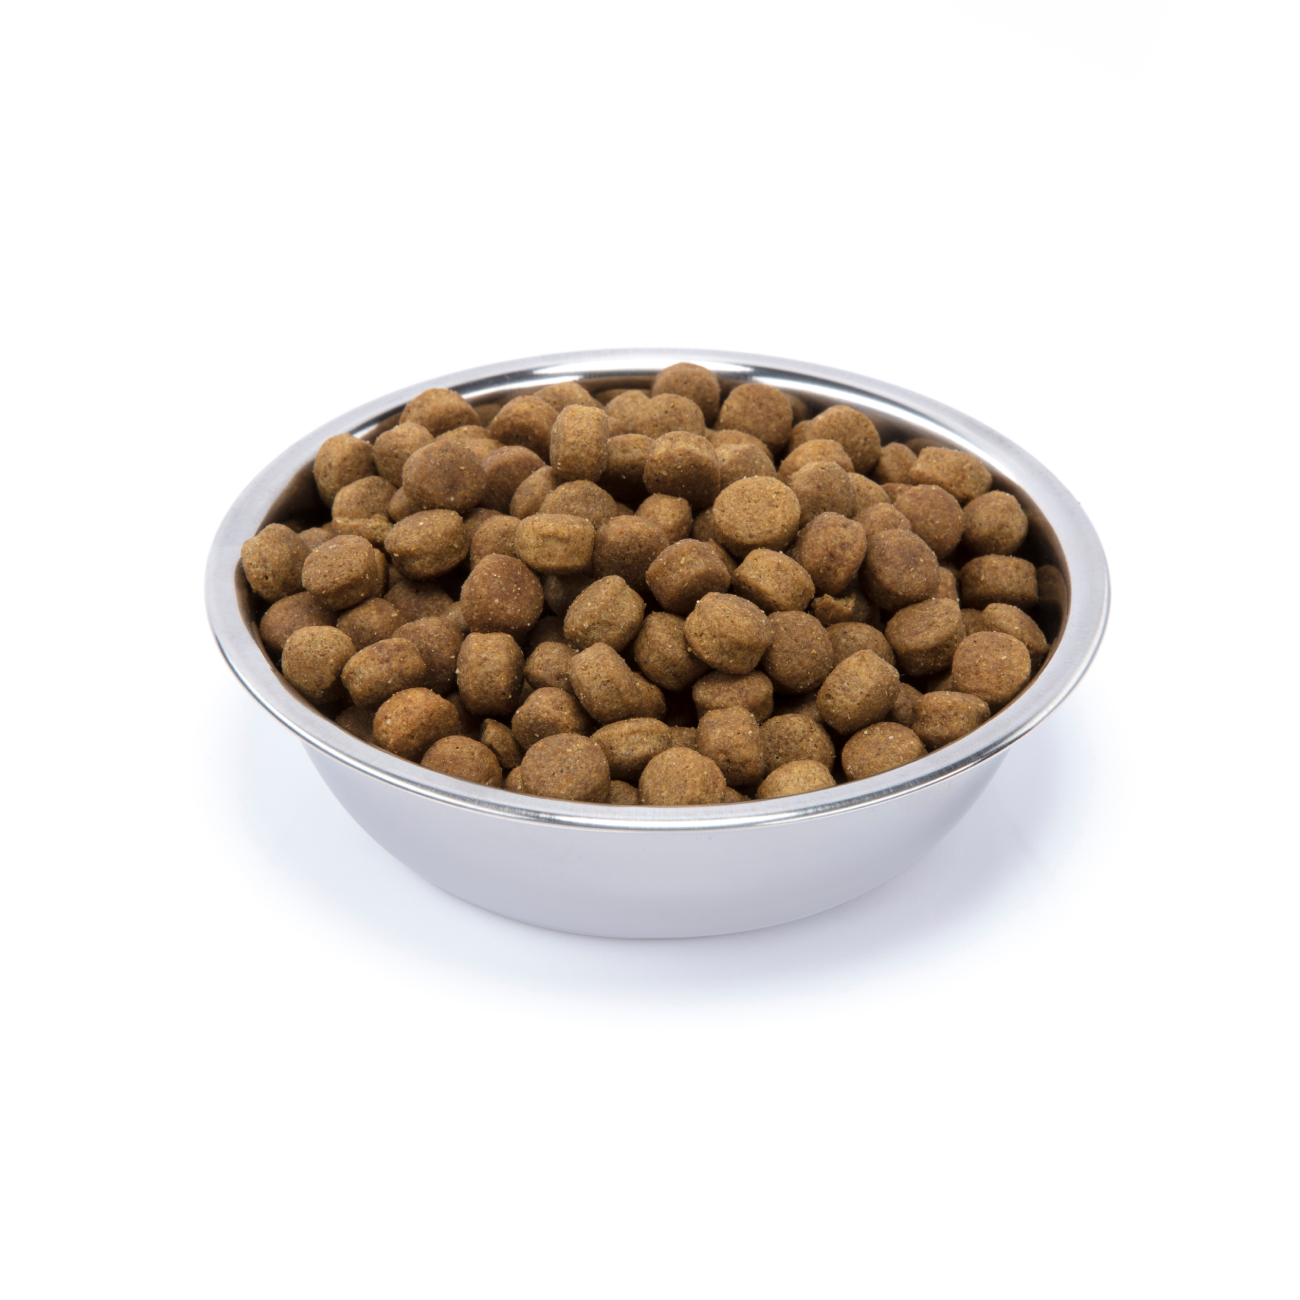 Сухой корм для собак NUTRO Grain Free, для средних пород, ягненок, розмарин, 10кг